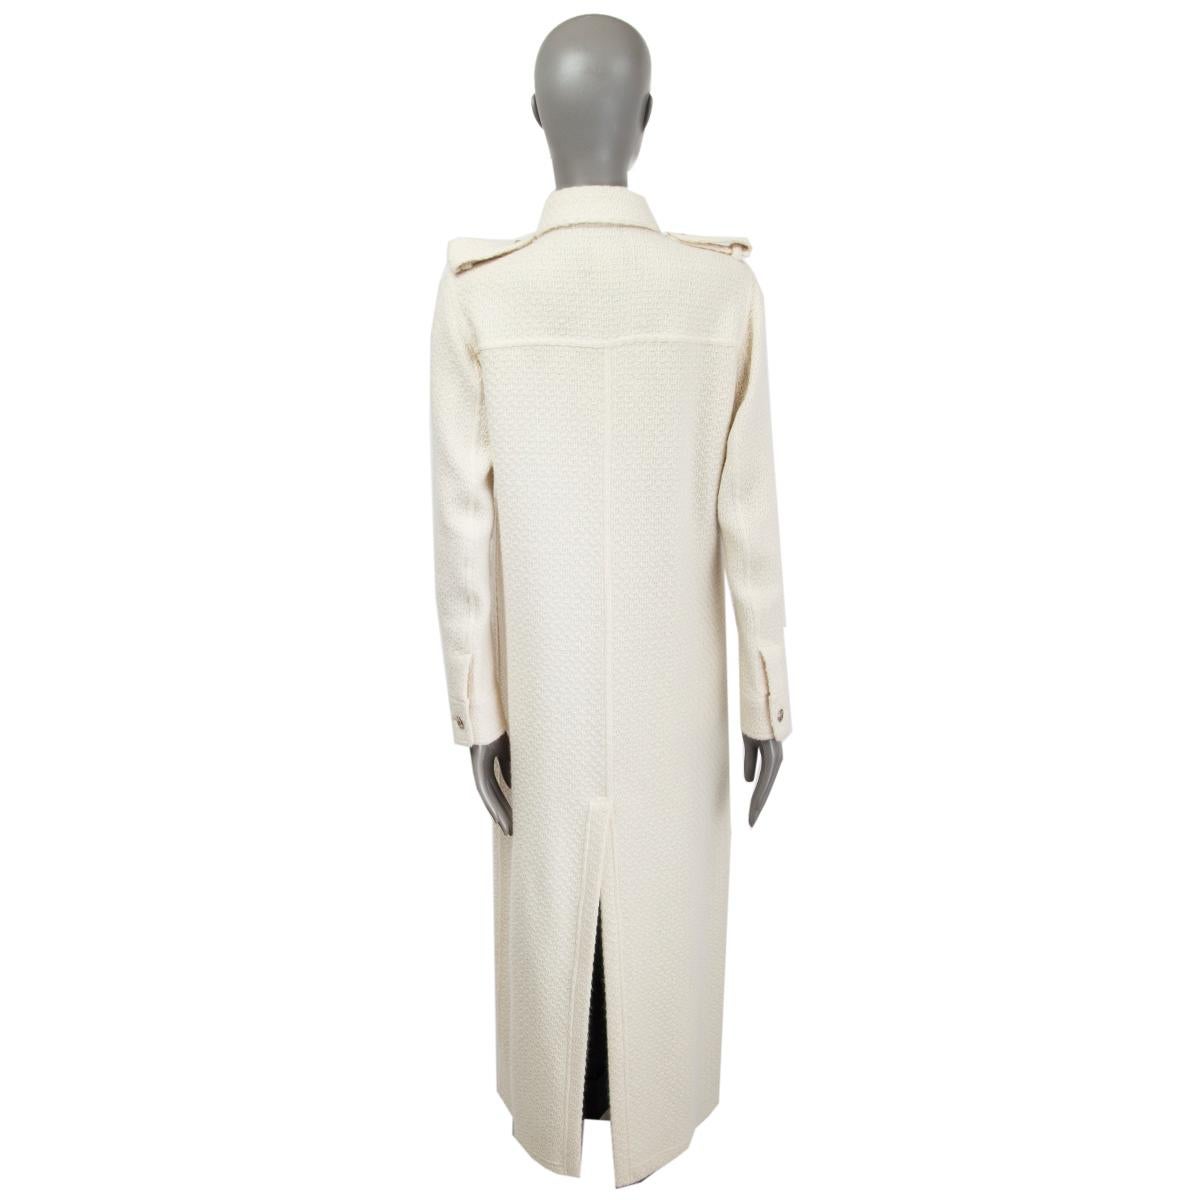 White CHANEL white wool & angora FULL LENGTH KNIT Coat Jacket 40 M